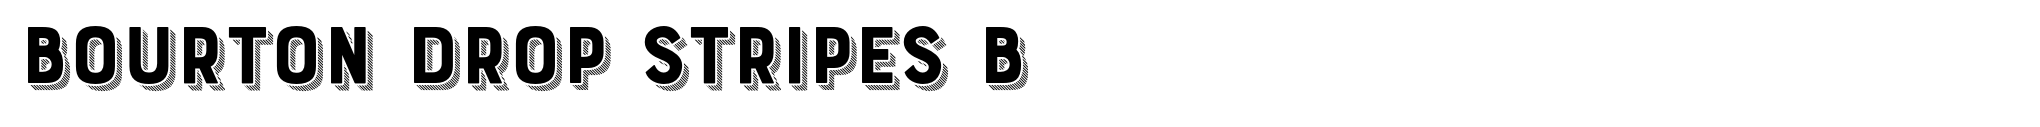 Bourton Drop Stripes B image